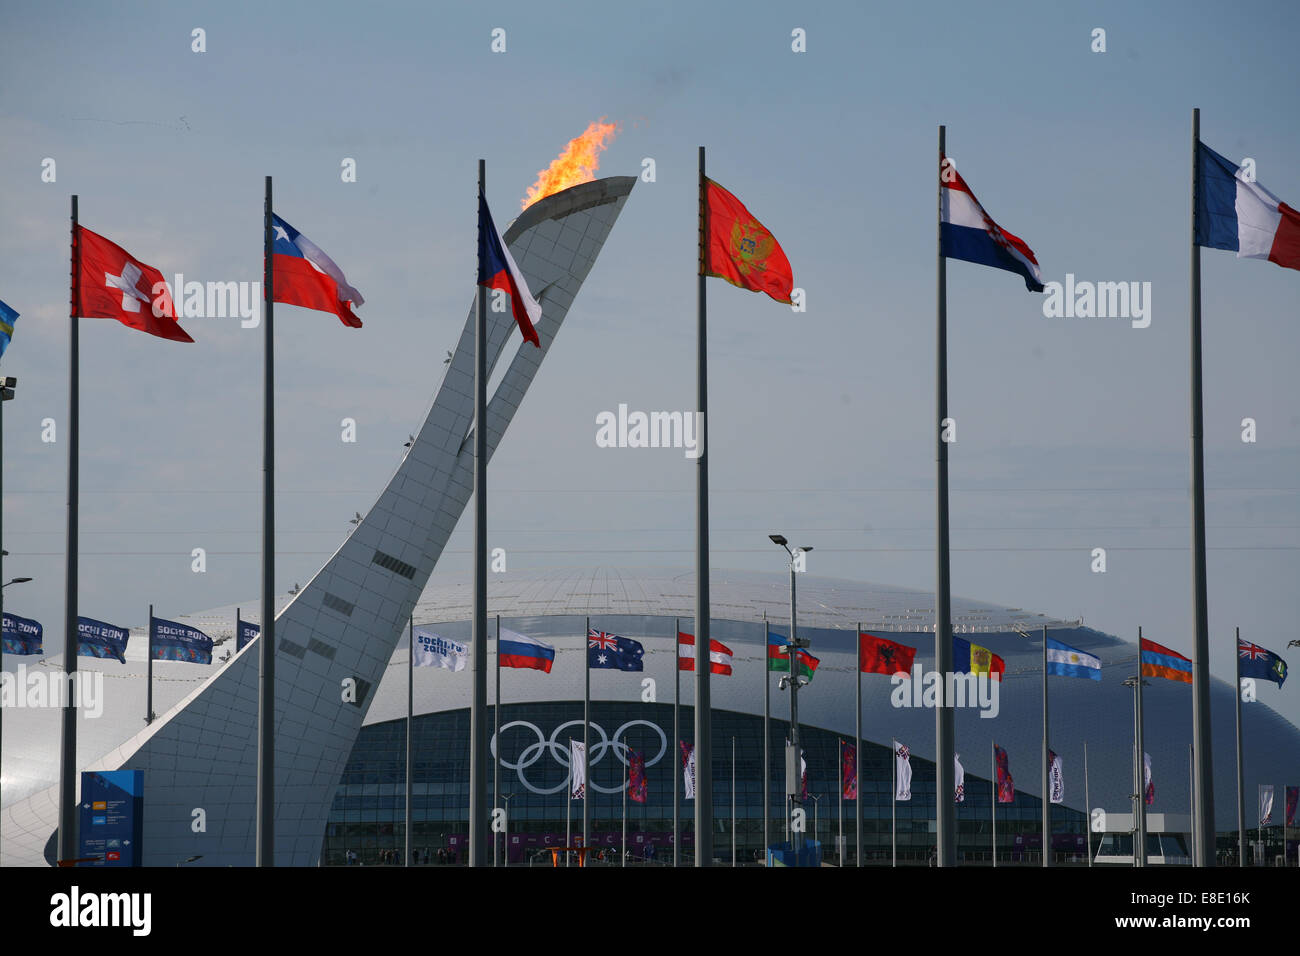 Olympic bandiere che circonda la fiamma olimpica Sochi giochi invernali2014 Foto Stock